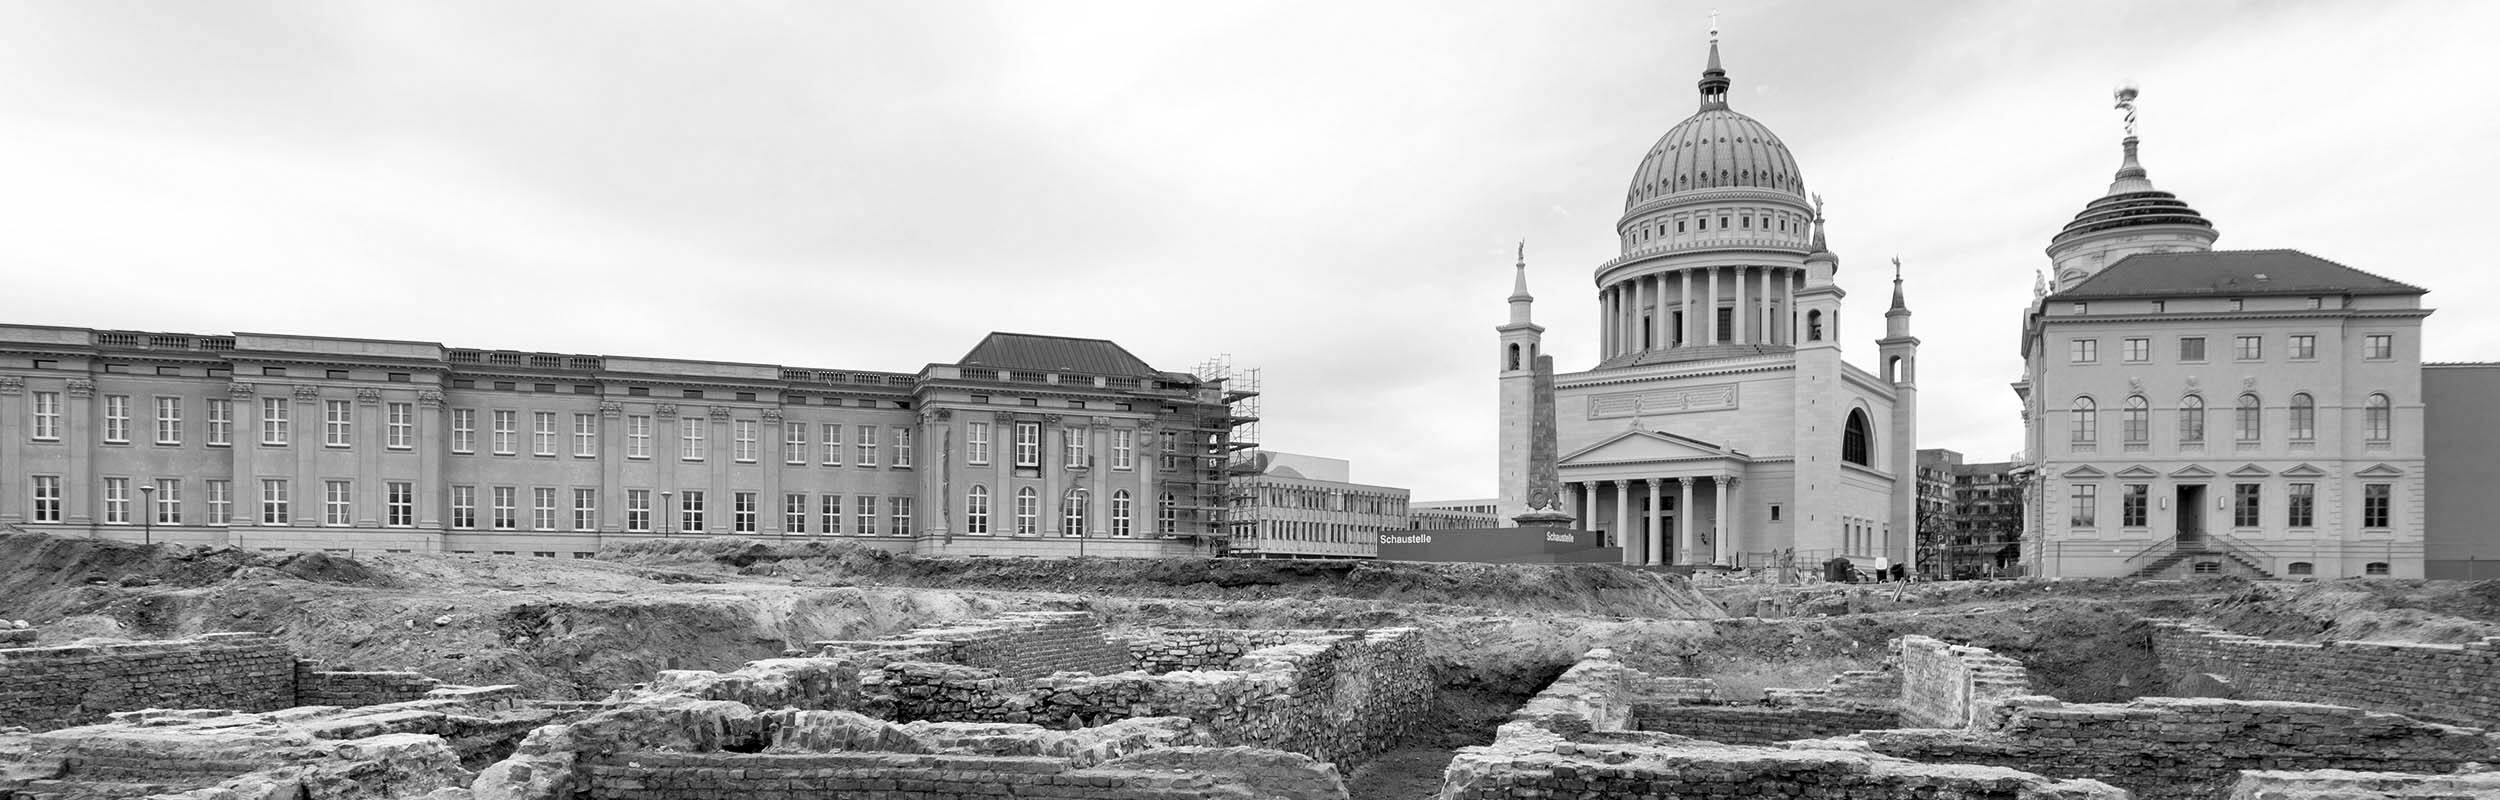 Foto: Im Vordergrund sind die Fundermente des ehemaligen Stadtschlosses am Havelufer zu sehen. Im Hintergrund stehen das neue Landsgebäude, die Nikolaikirche und das Museum.